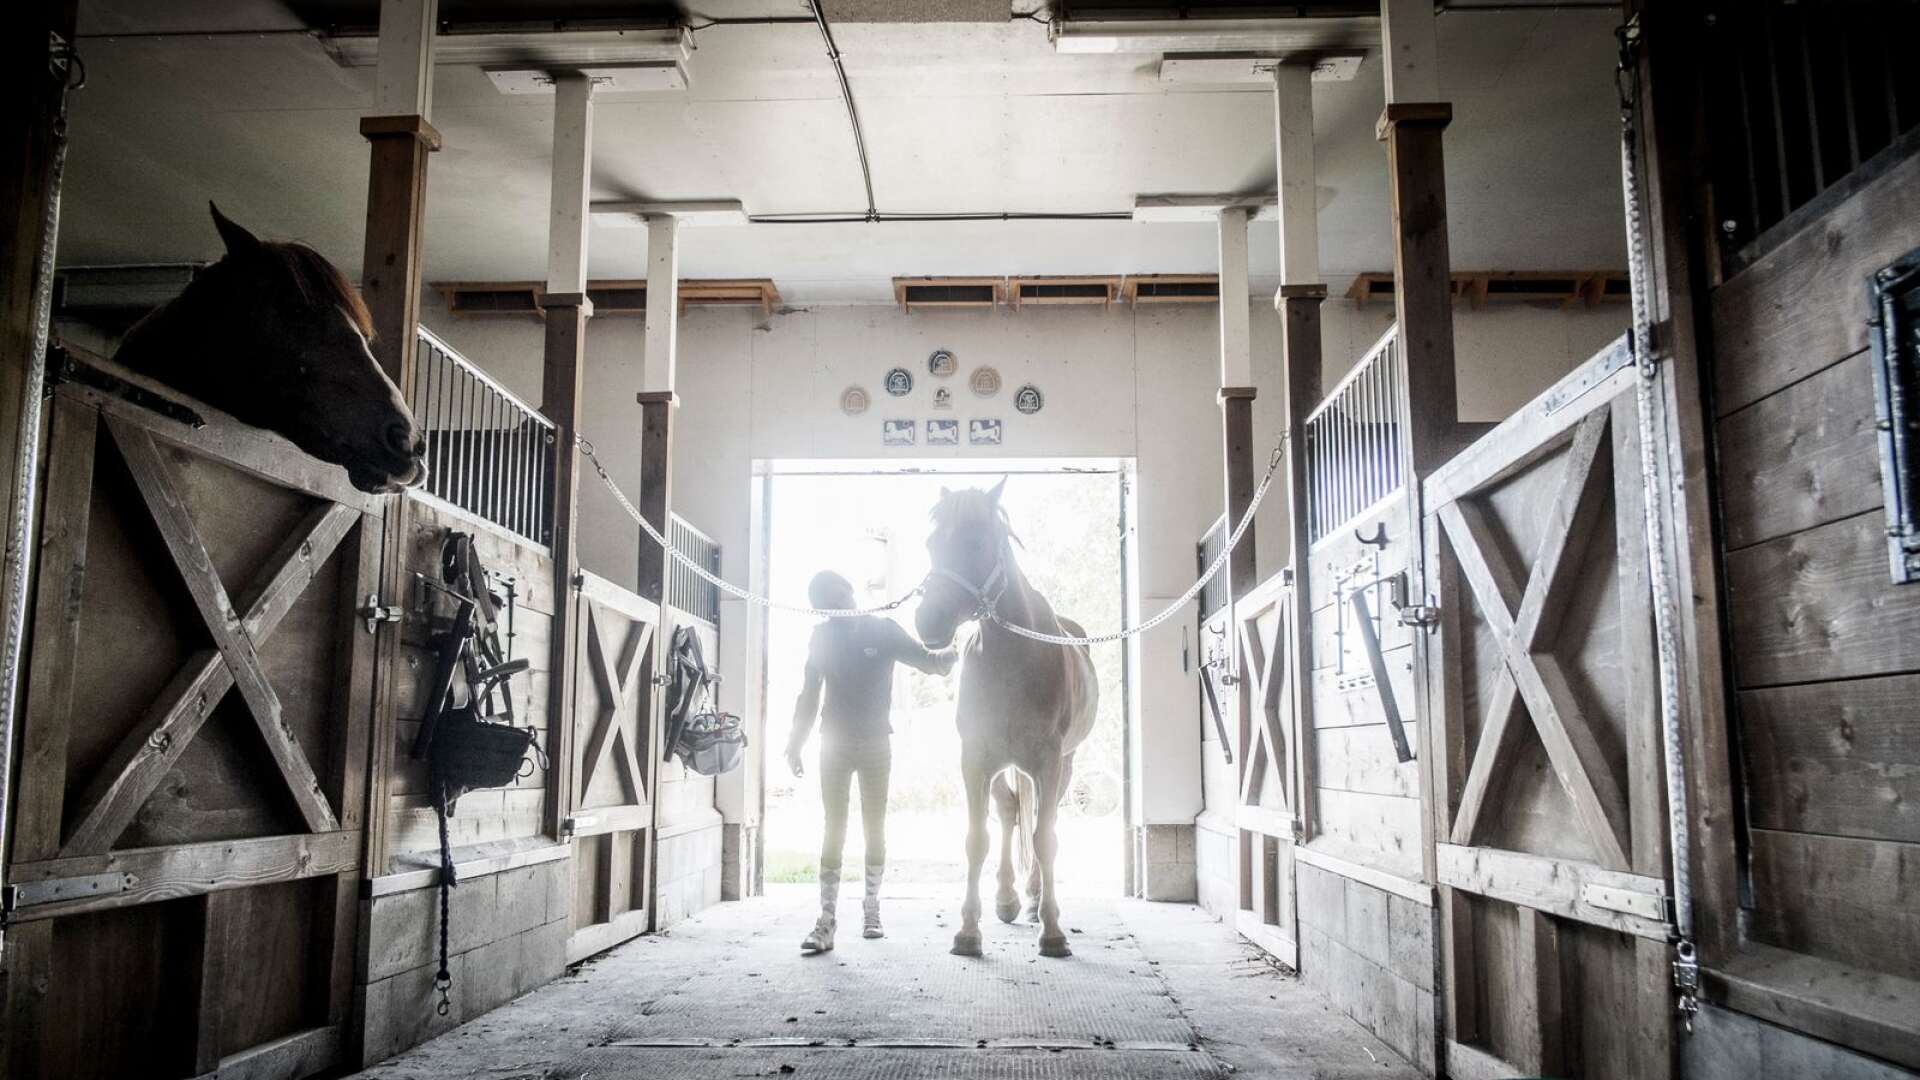 Jag hoppas att Hammarö kommun nu agerar för att värna om ridsporten i kommunen så att barn och unga kan vistas säkert i naturen till häst där en ny ridled skulle kunna ses som en investering, skriver insändarskribenten. Genrebild.